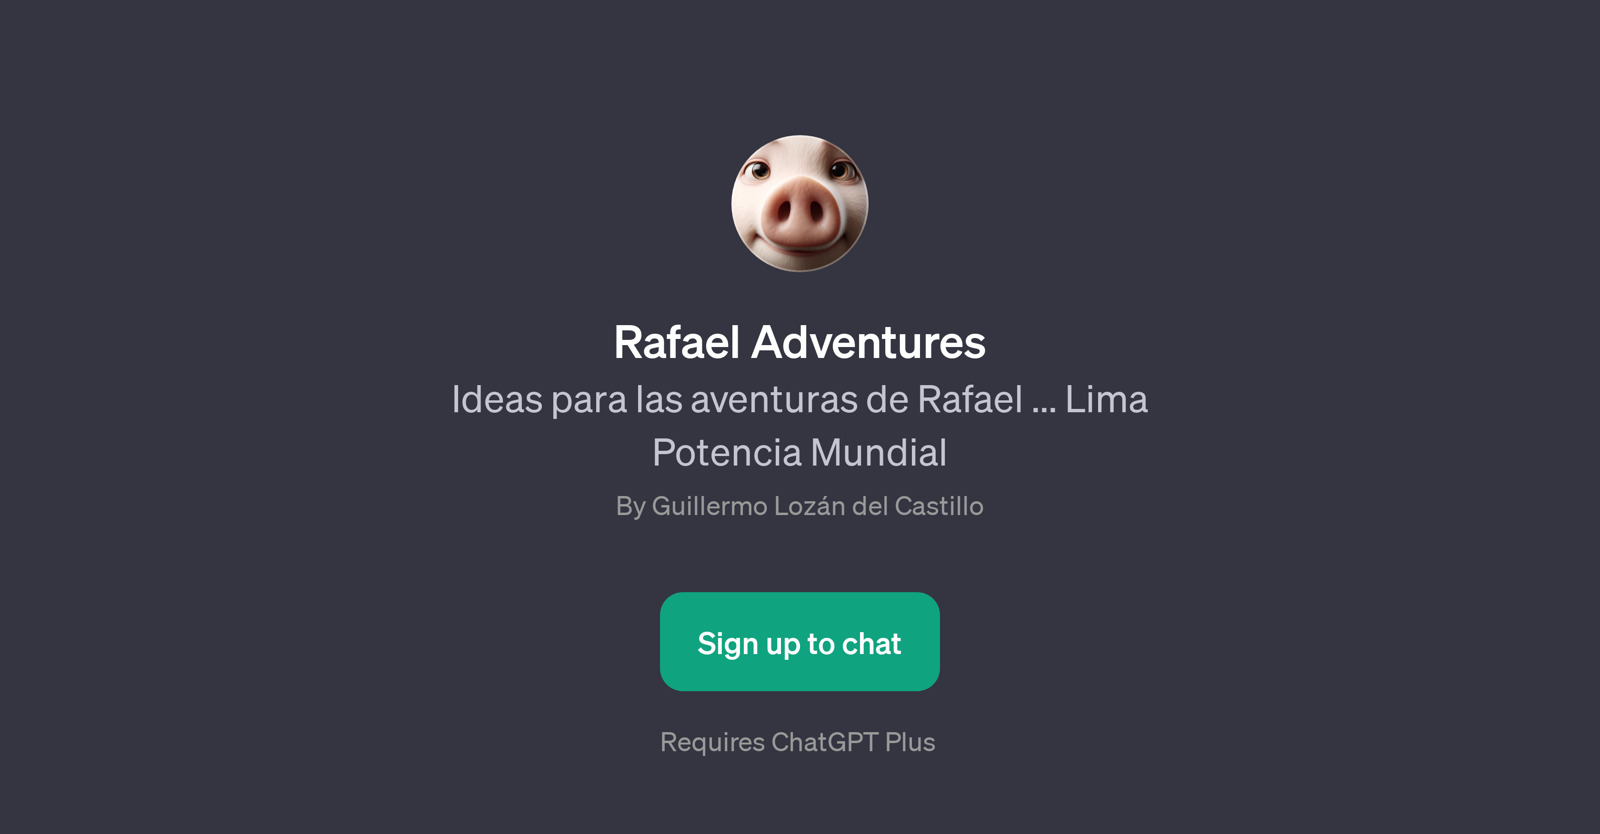 Rafael Adventures website